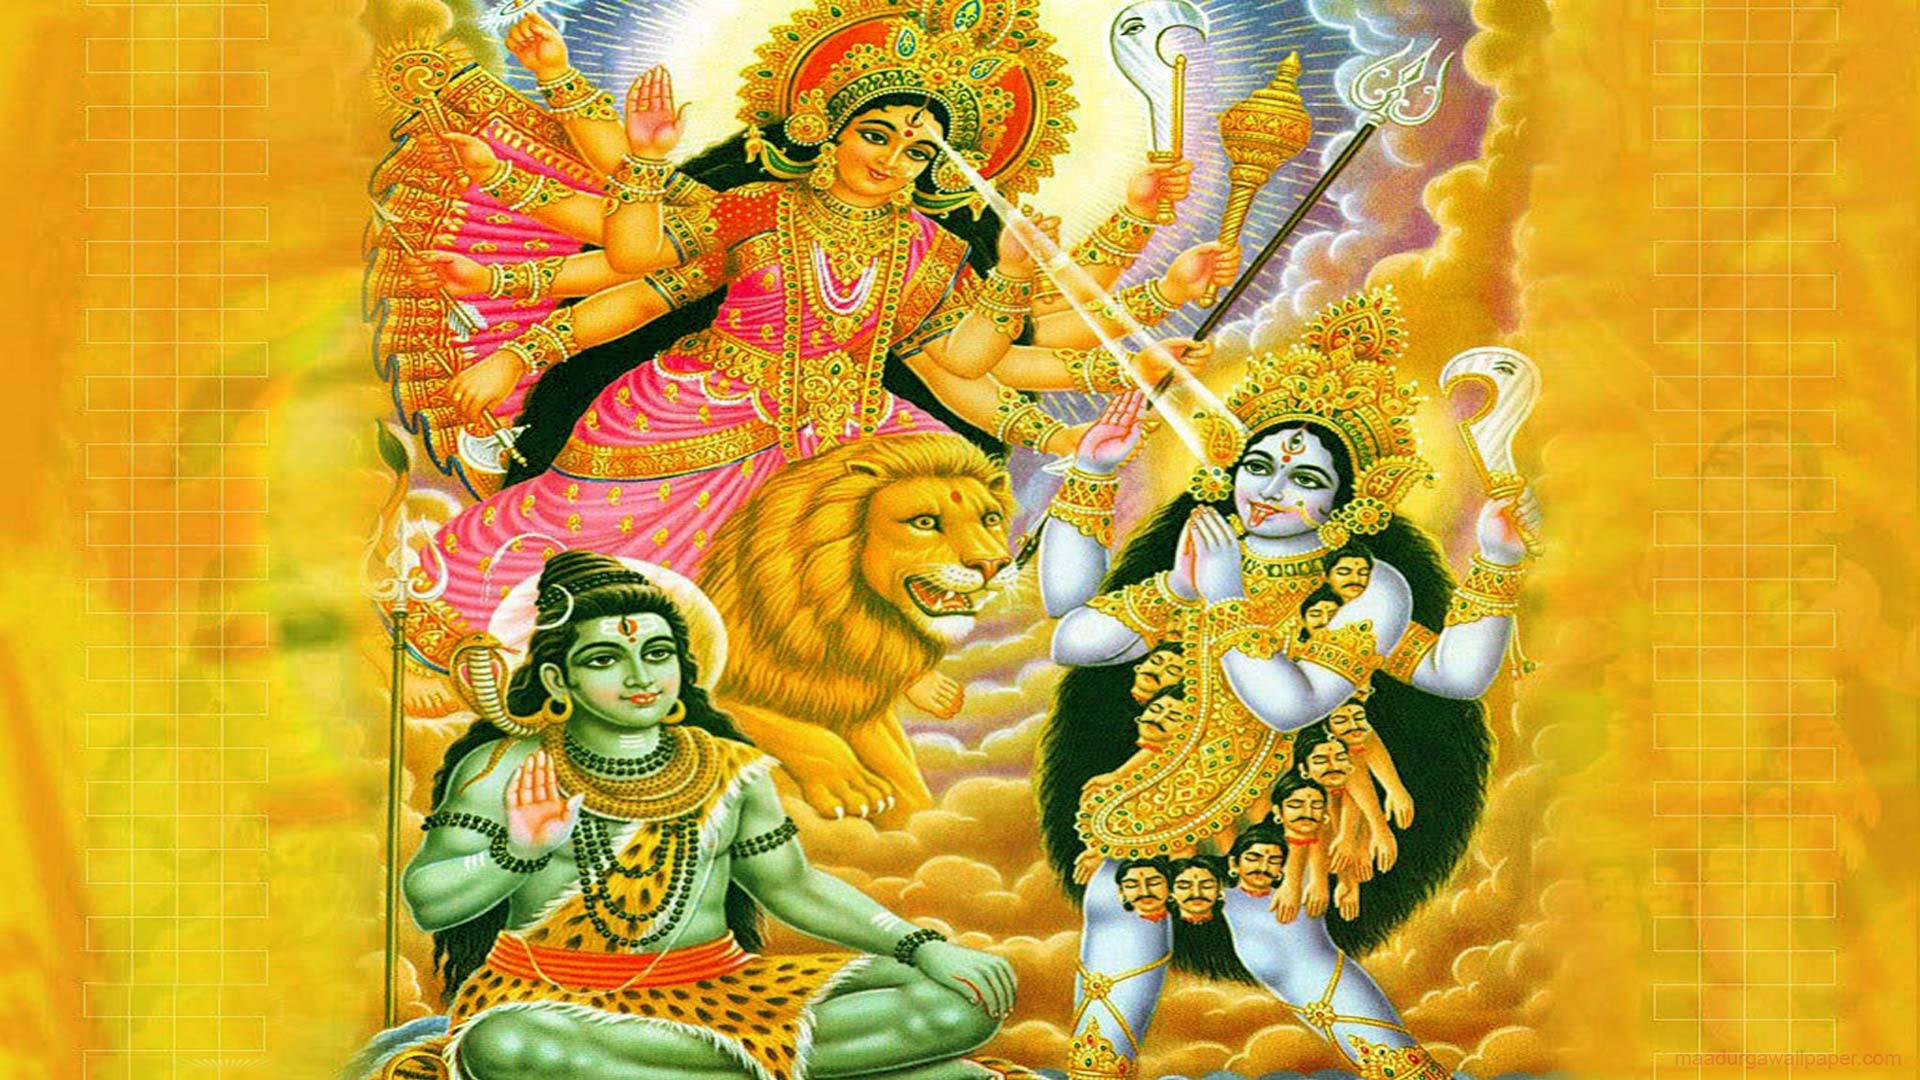 Maa Kali Orange Aesthetic With Gods Wallpaper